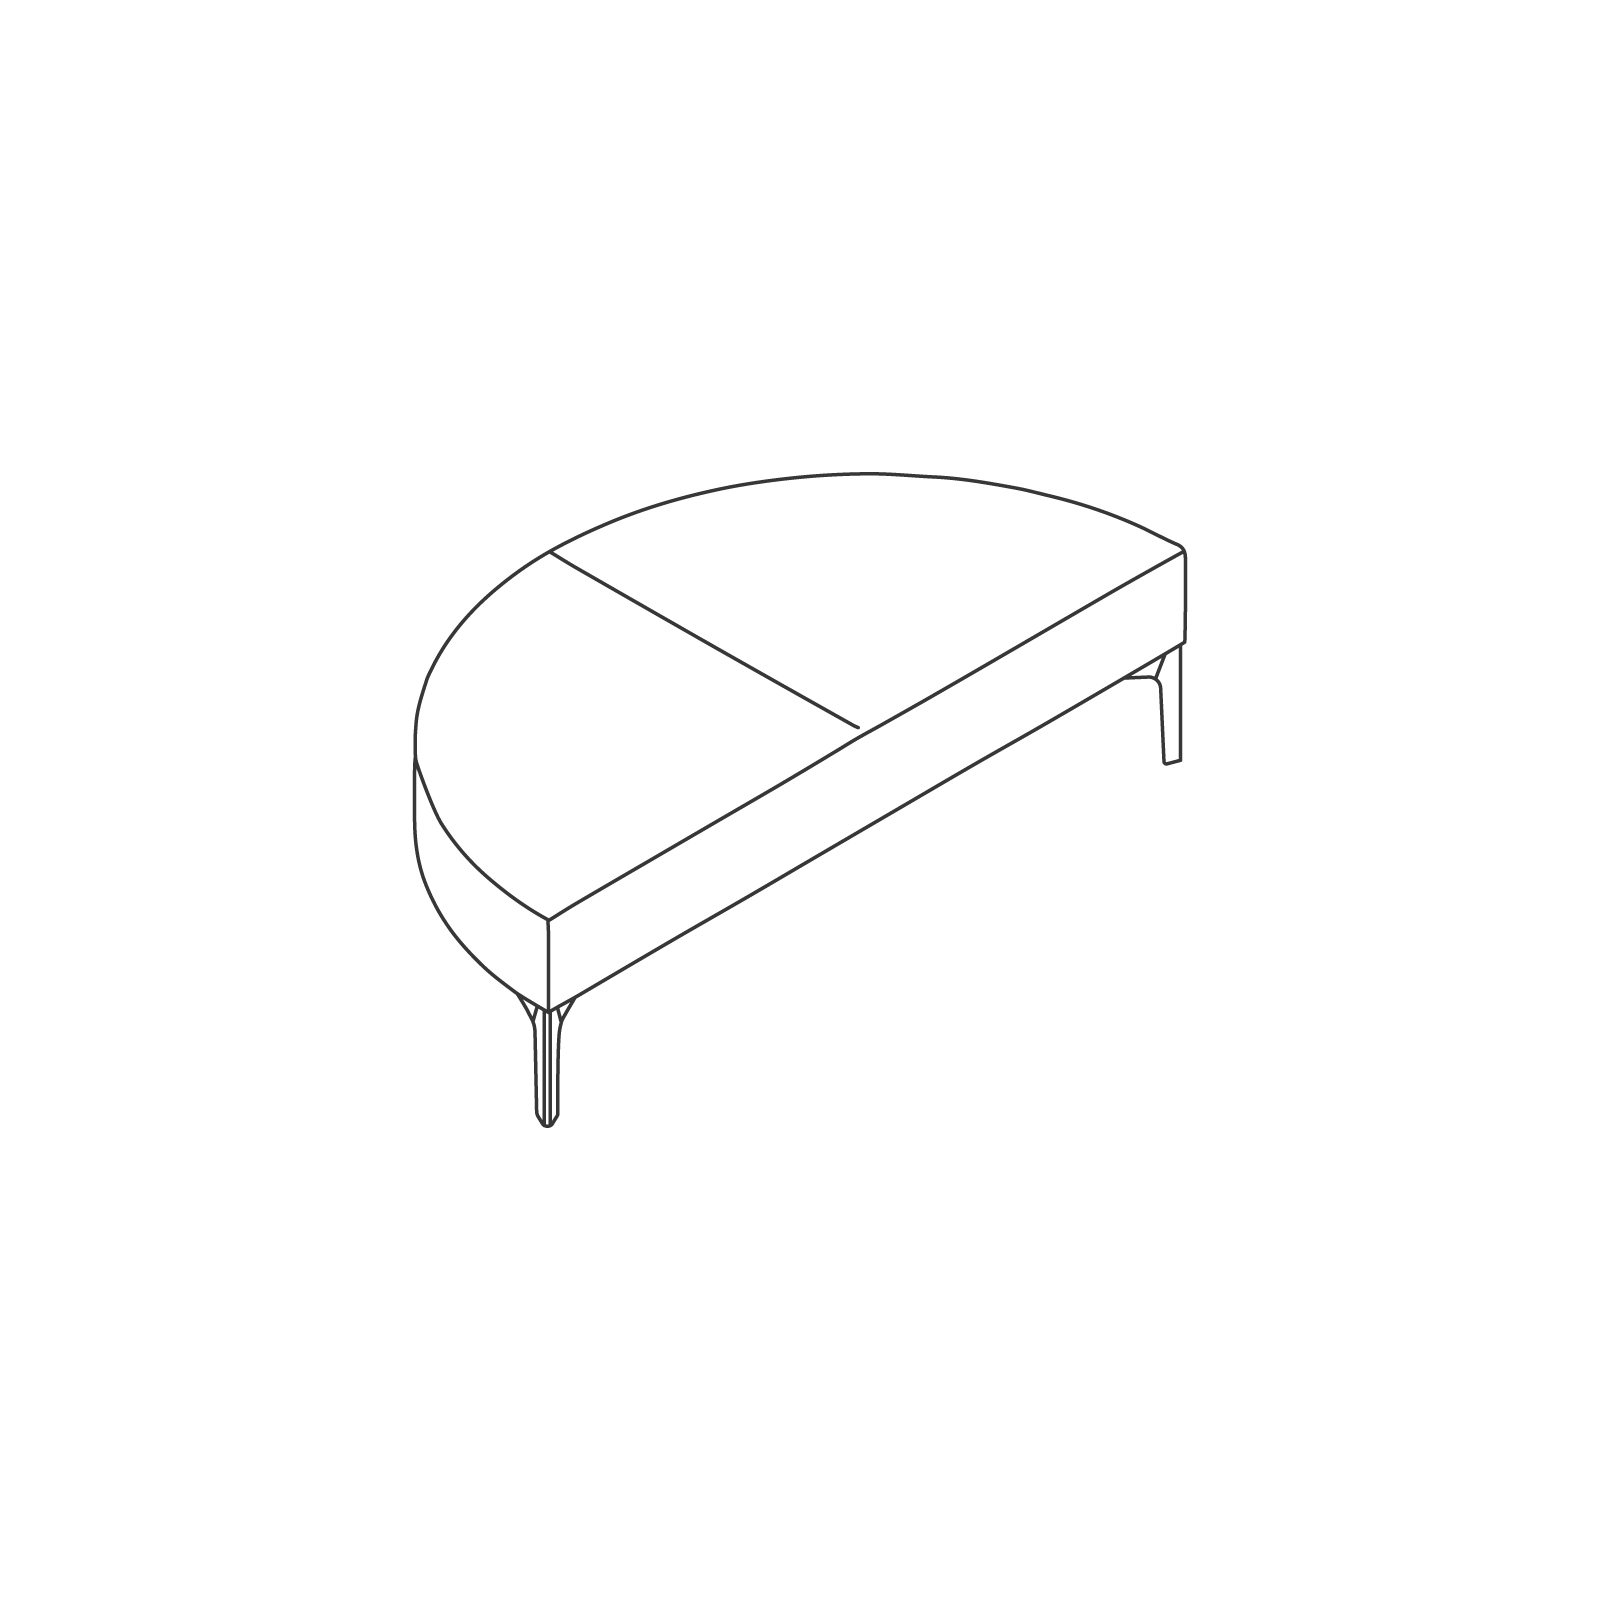 Un dibujo - Sillería modular Symbol – Banca – Curva externa de 180 grados